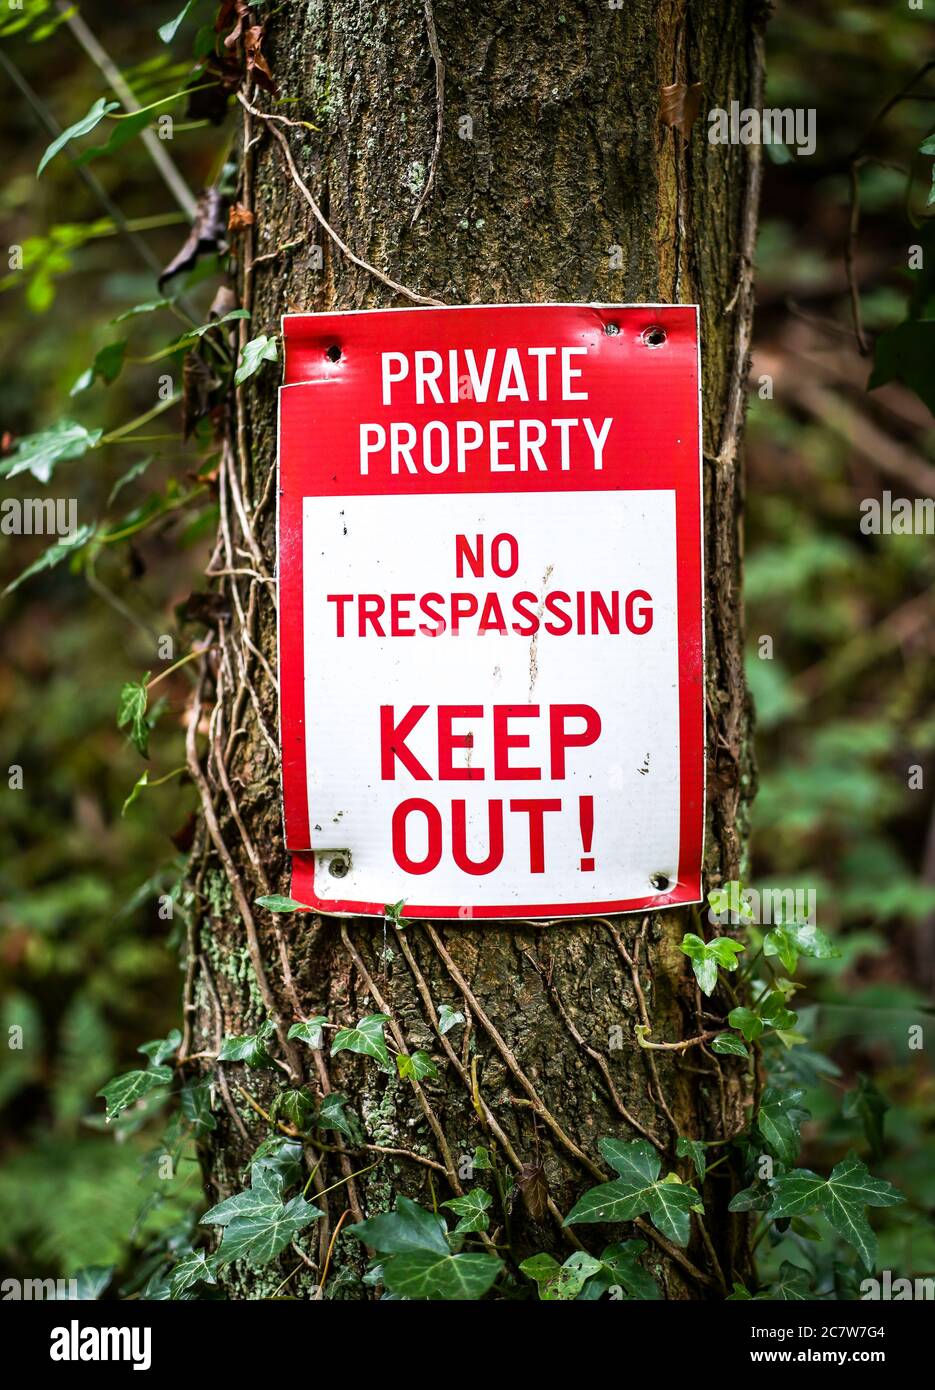 Halten Sie das Schild in UK Woodland. Beschilderung Warnung öffentlich zu halten, kein Betreten, Privateigentum. Stockfoto